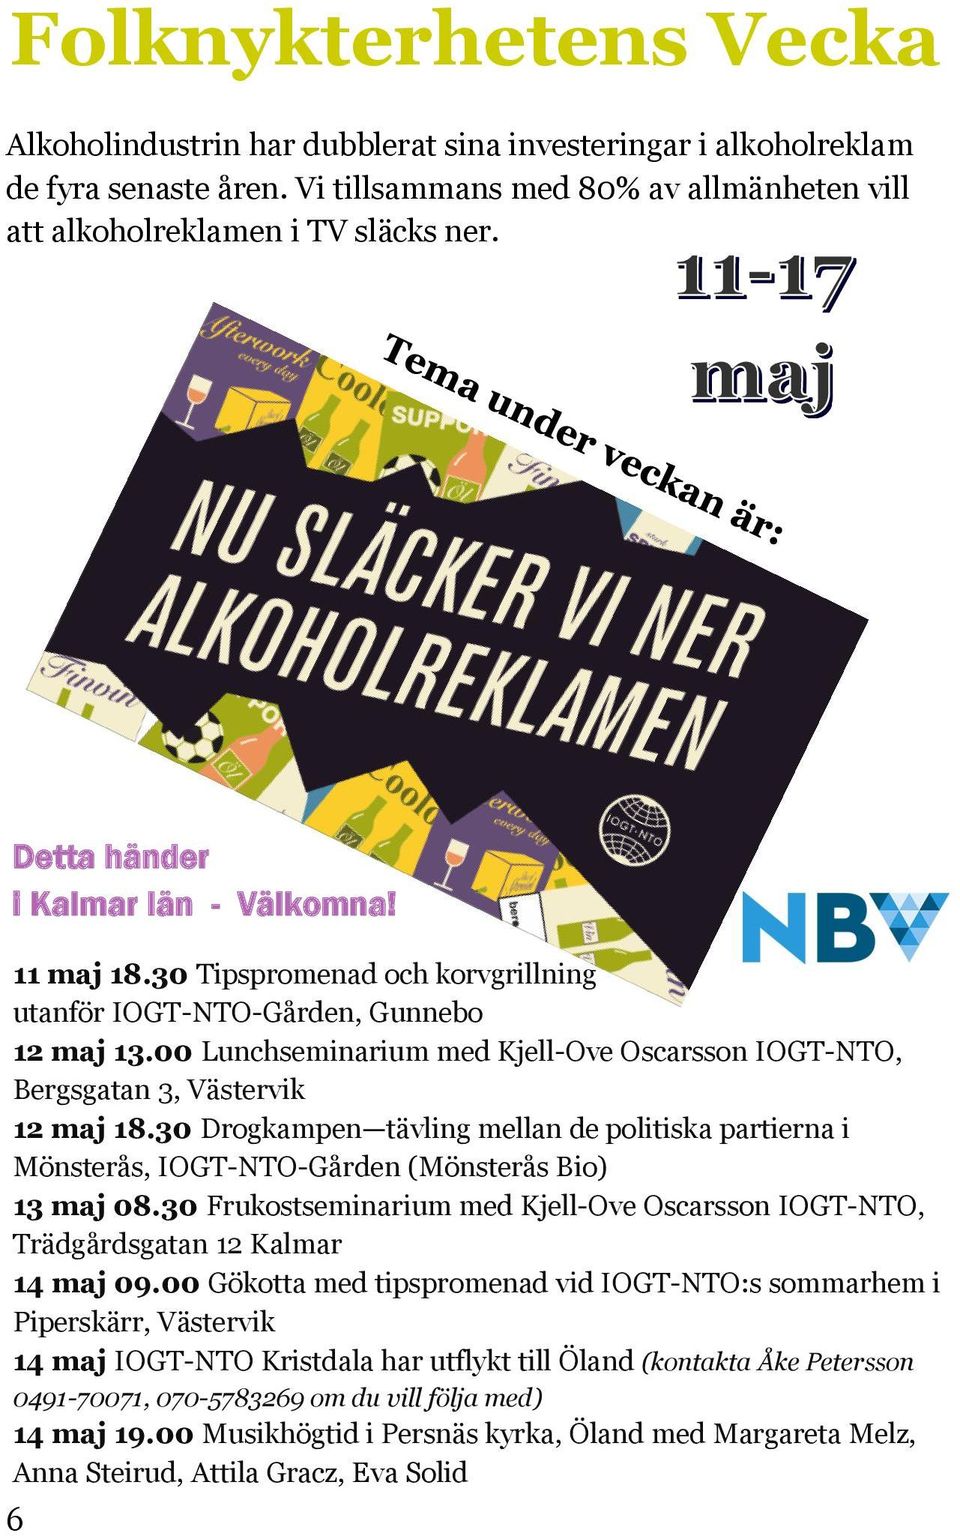 00 Lunchseminarium med Kjell-Ove Oscarsson IOGT-NTO, Bergsgatan 3, Västervik 12 maj 18.30 Drogkampen tävling mellan de politiska partierna i Mönsterås, IOGT-NTO-Gården (Mönsterås Bio) 13 maj 08.